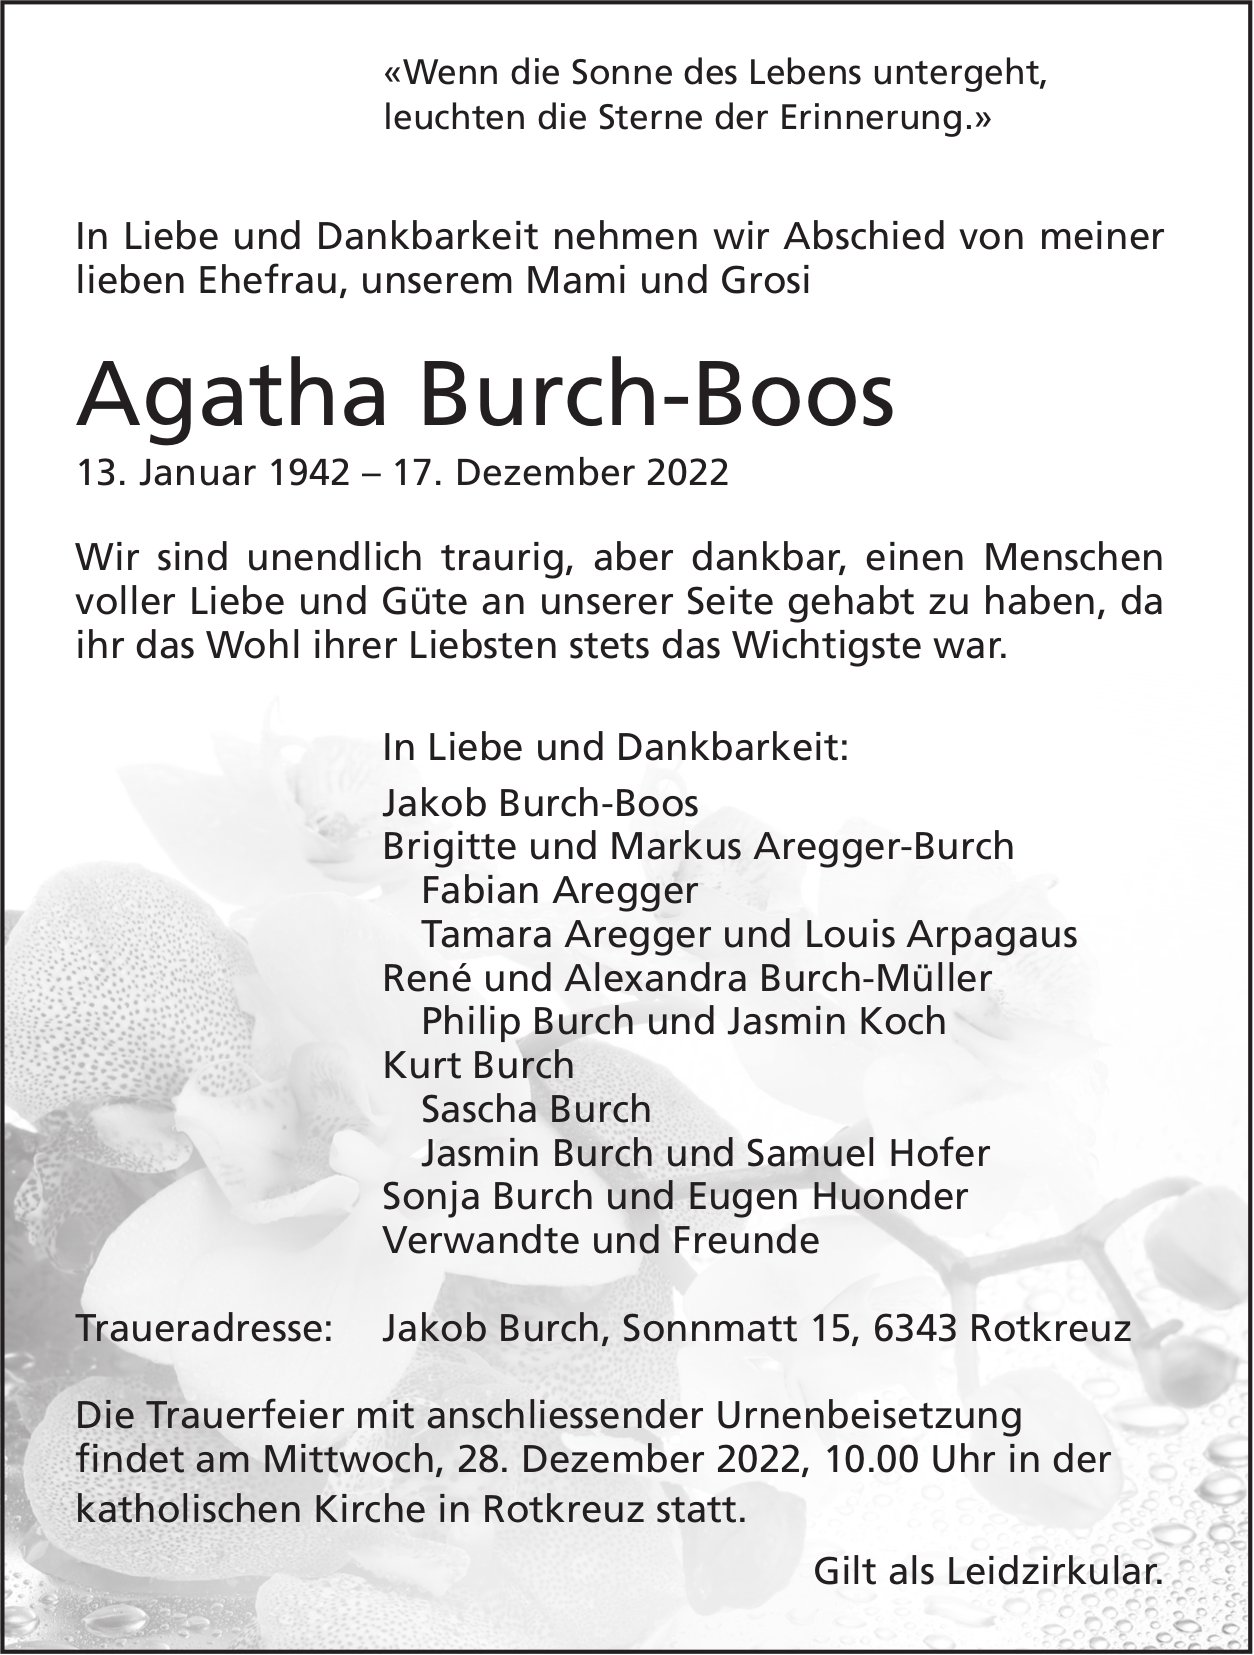 Burch-Boos Agatha, Dezember 2022 / TA